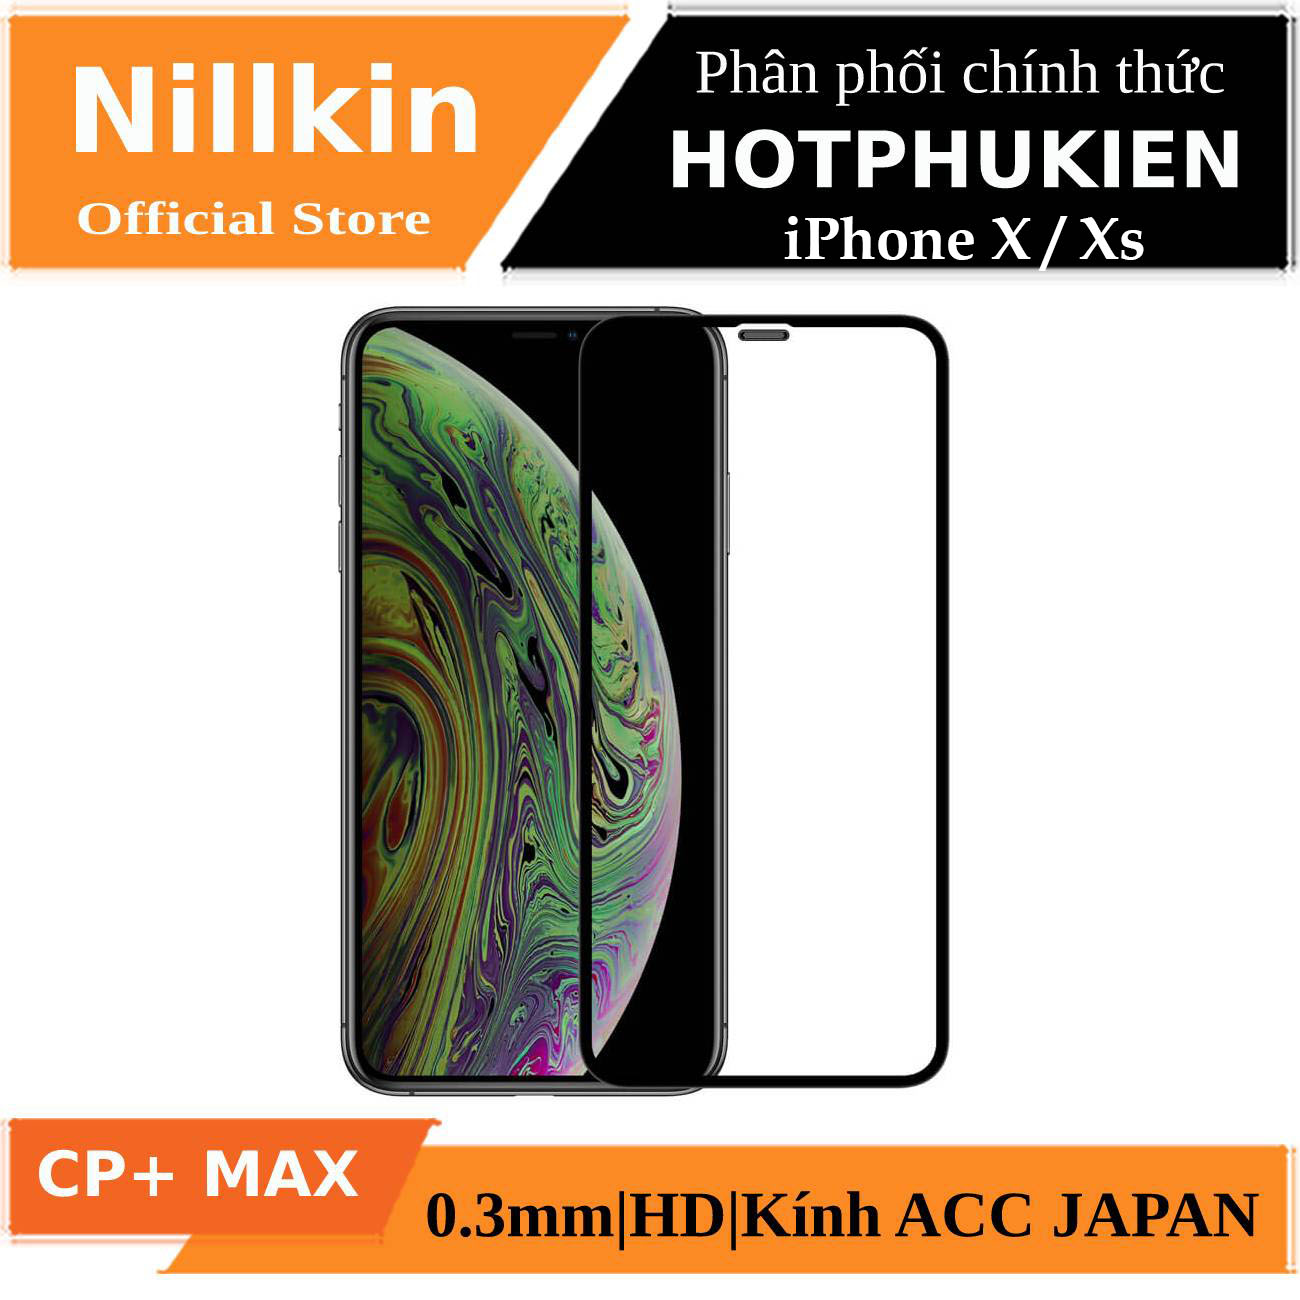 Miếng dán cường lực full 3D cho iPhone X / iPhone Xs hiệu Nillkin CP+ Max